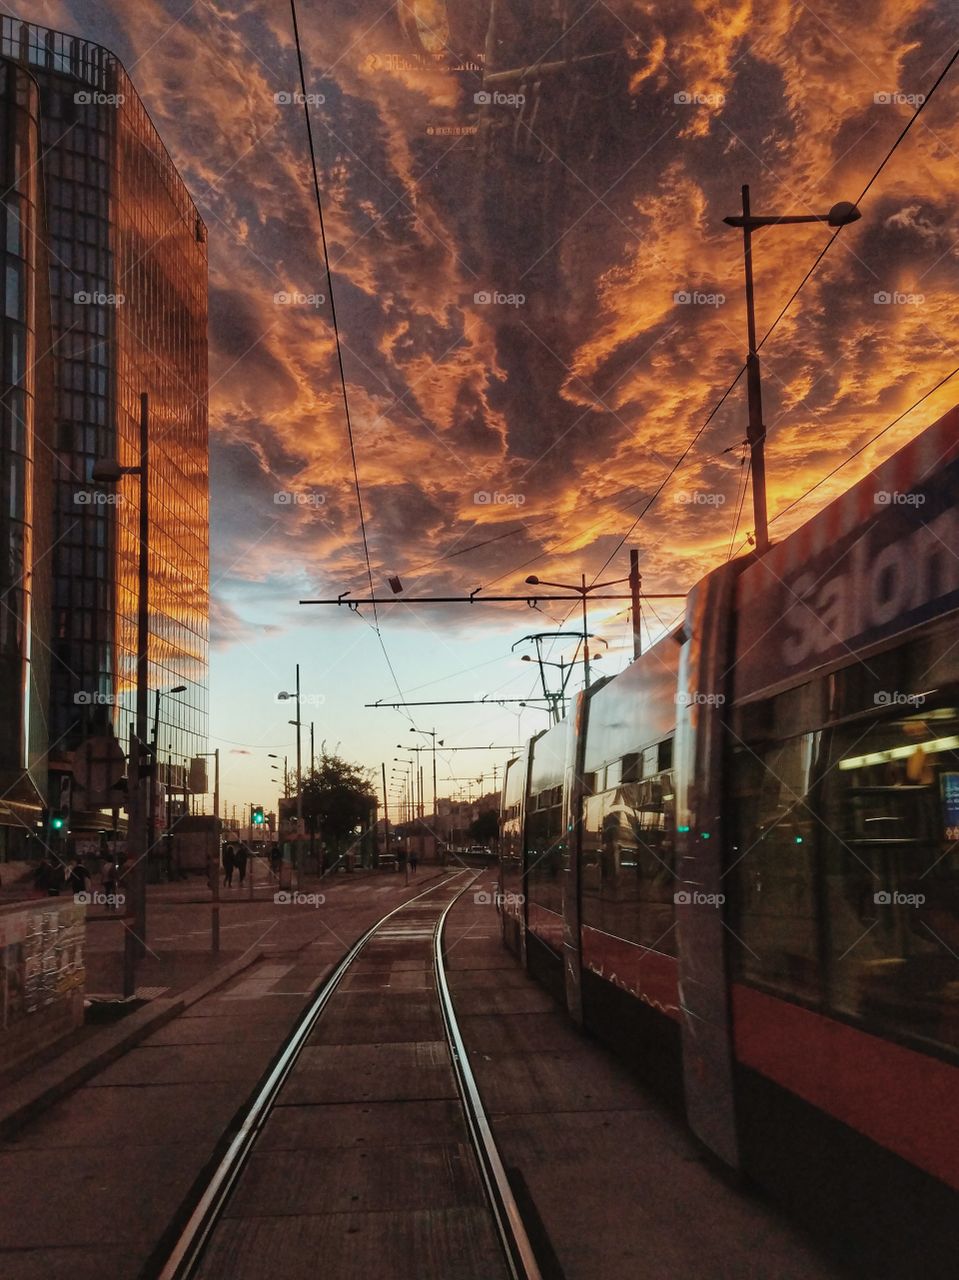 sunset in Vienna